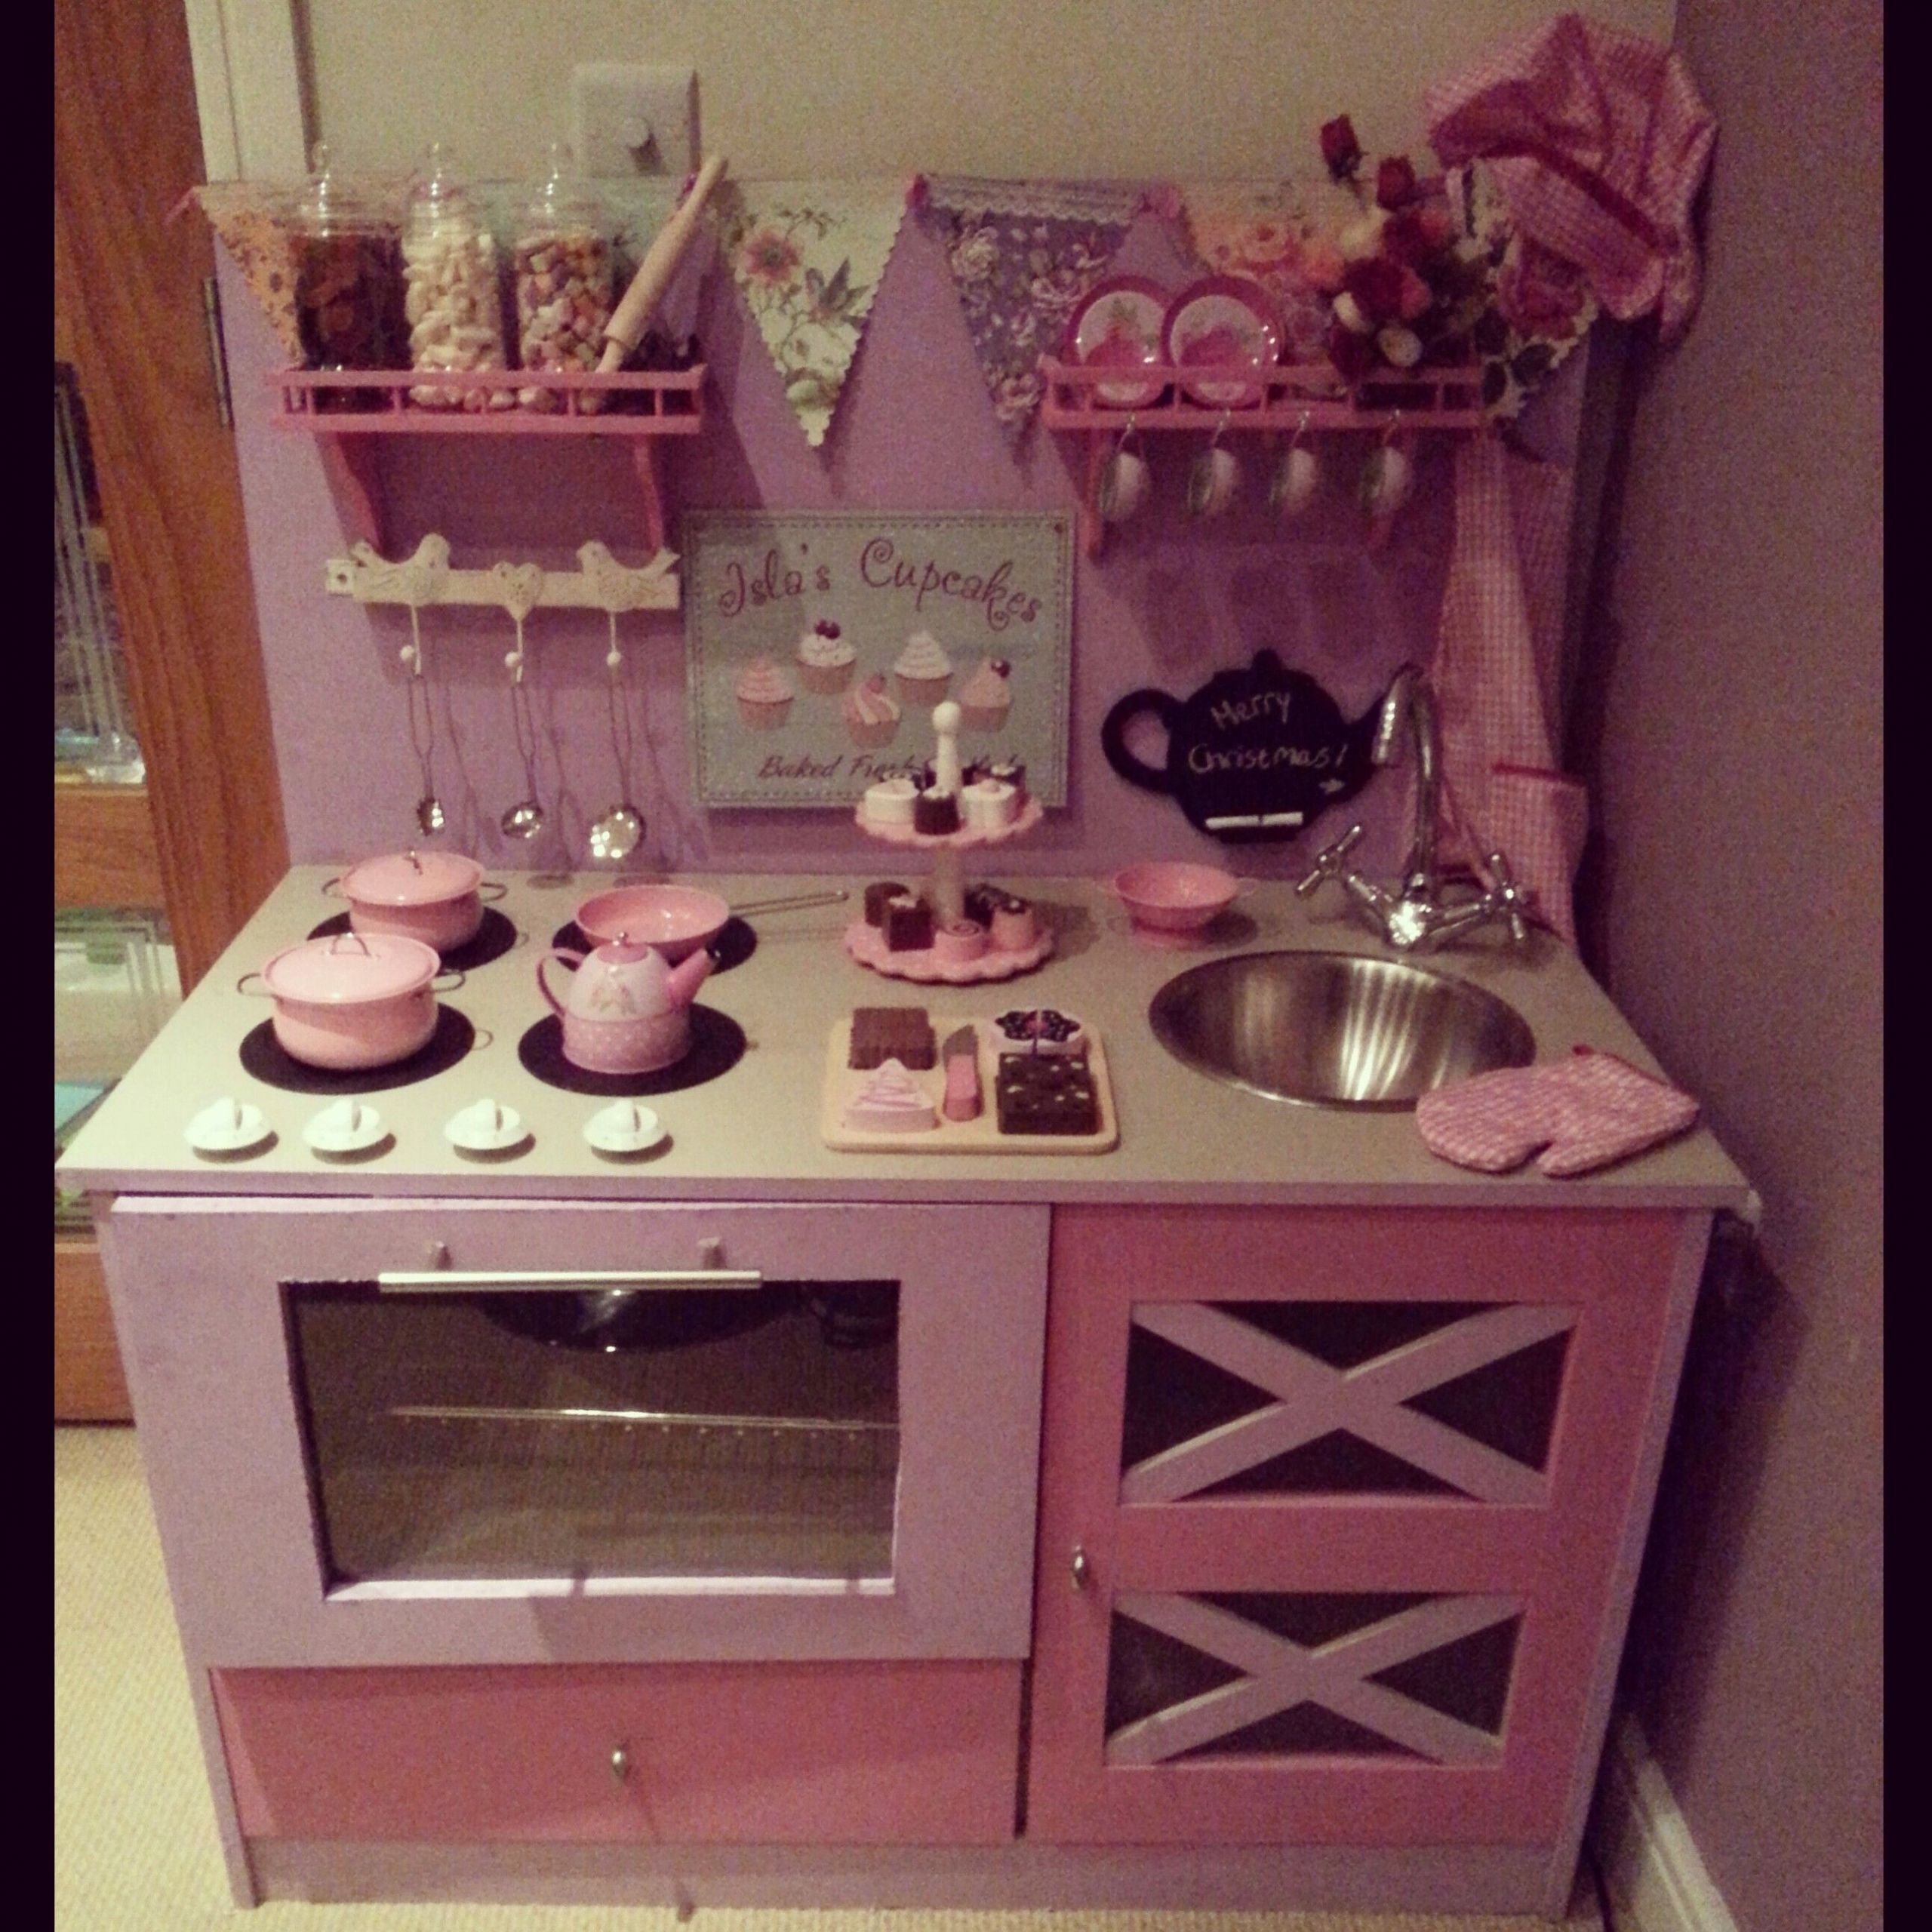 DIY Kids Kitchen Set
 Play kitchen diy kitchen toy kitchen girlie pink lilac fun